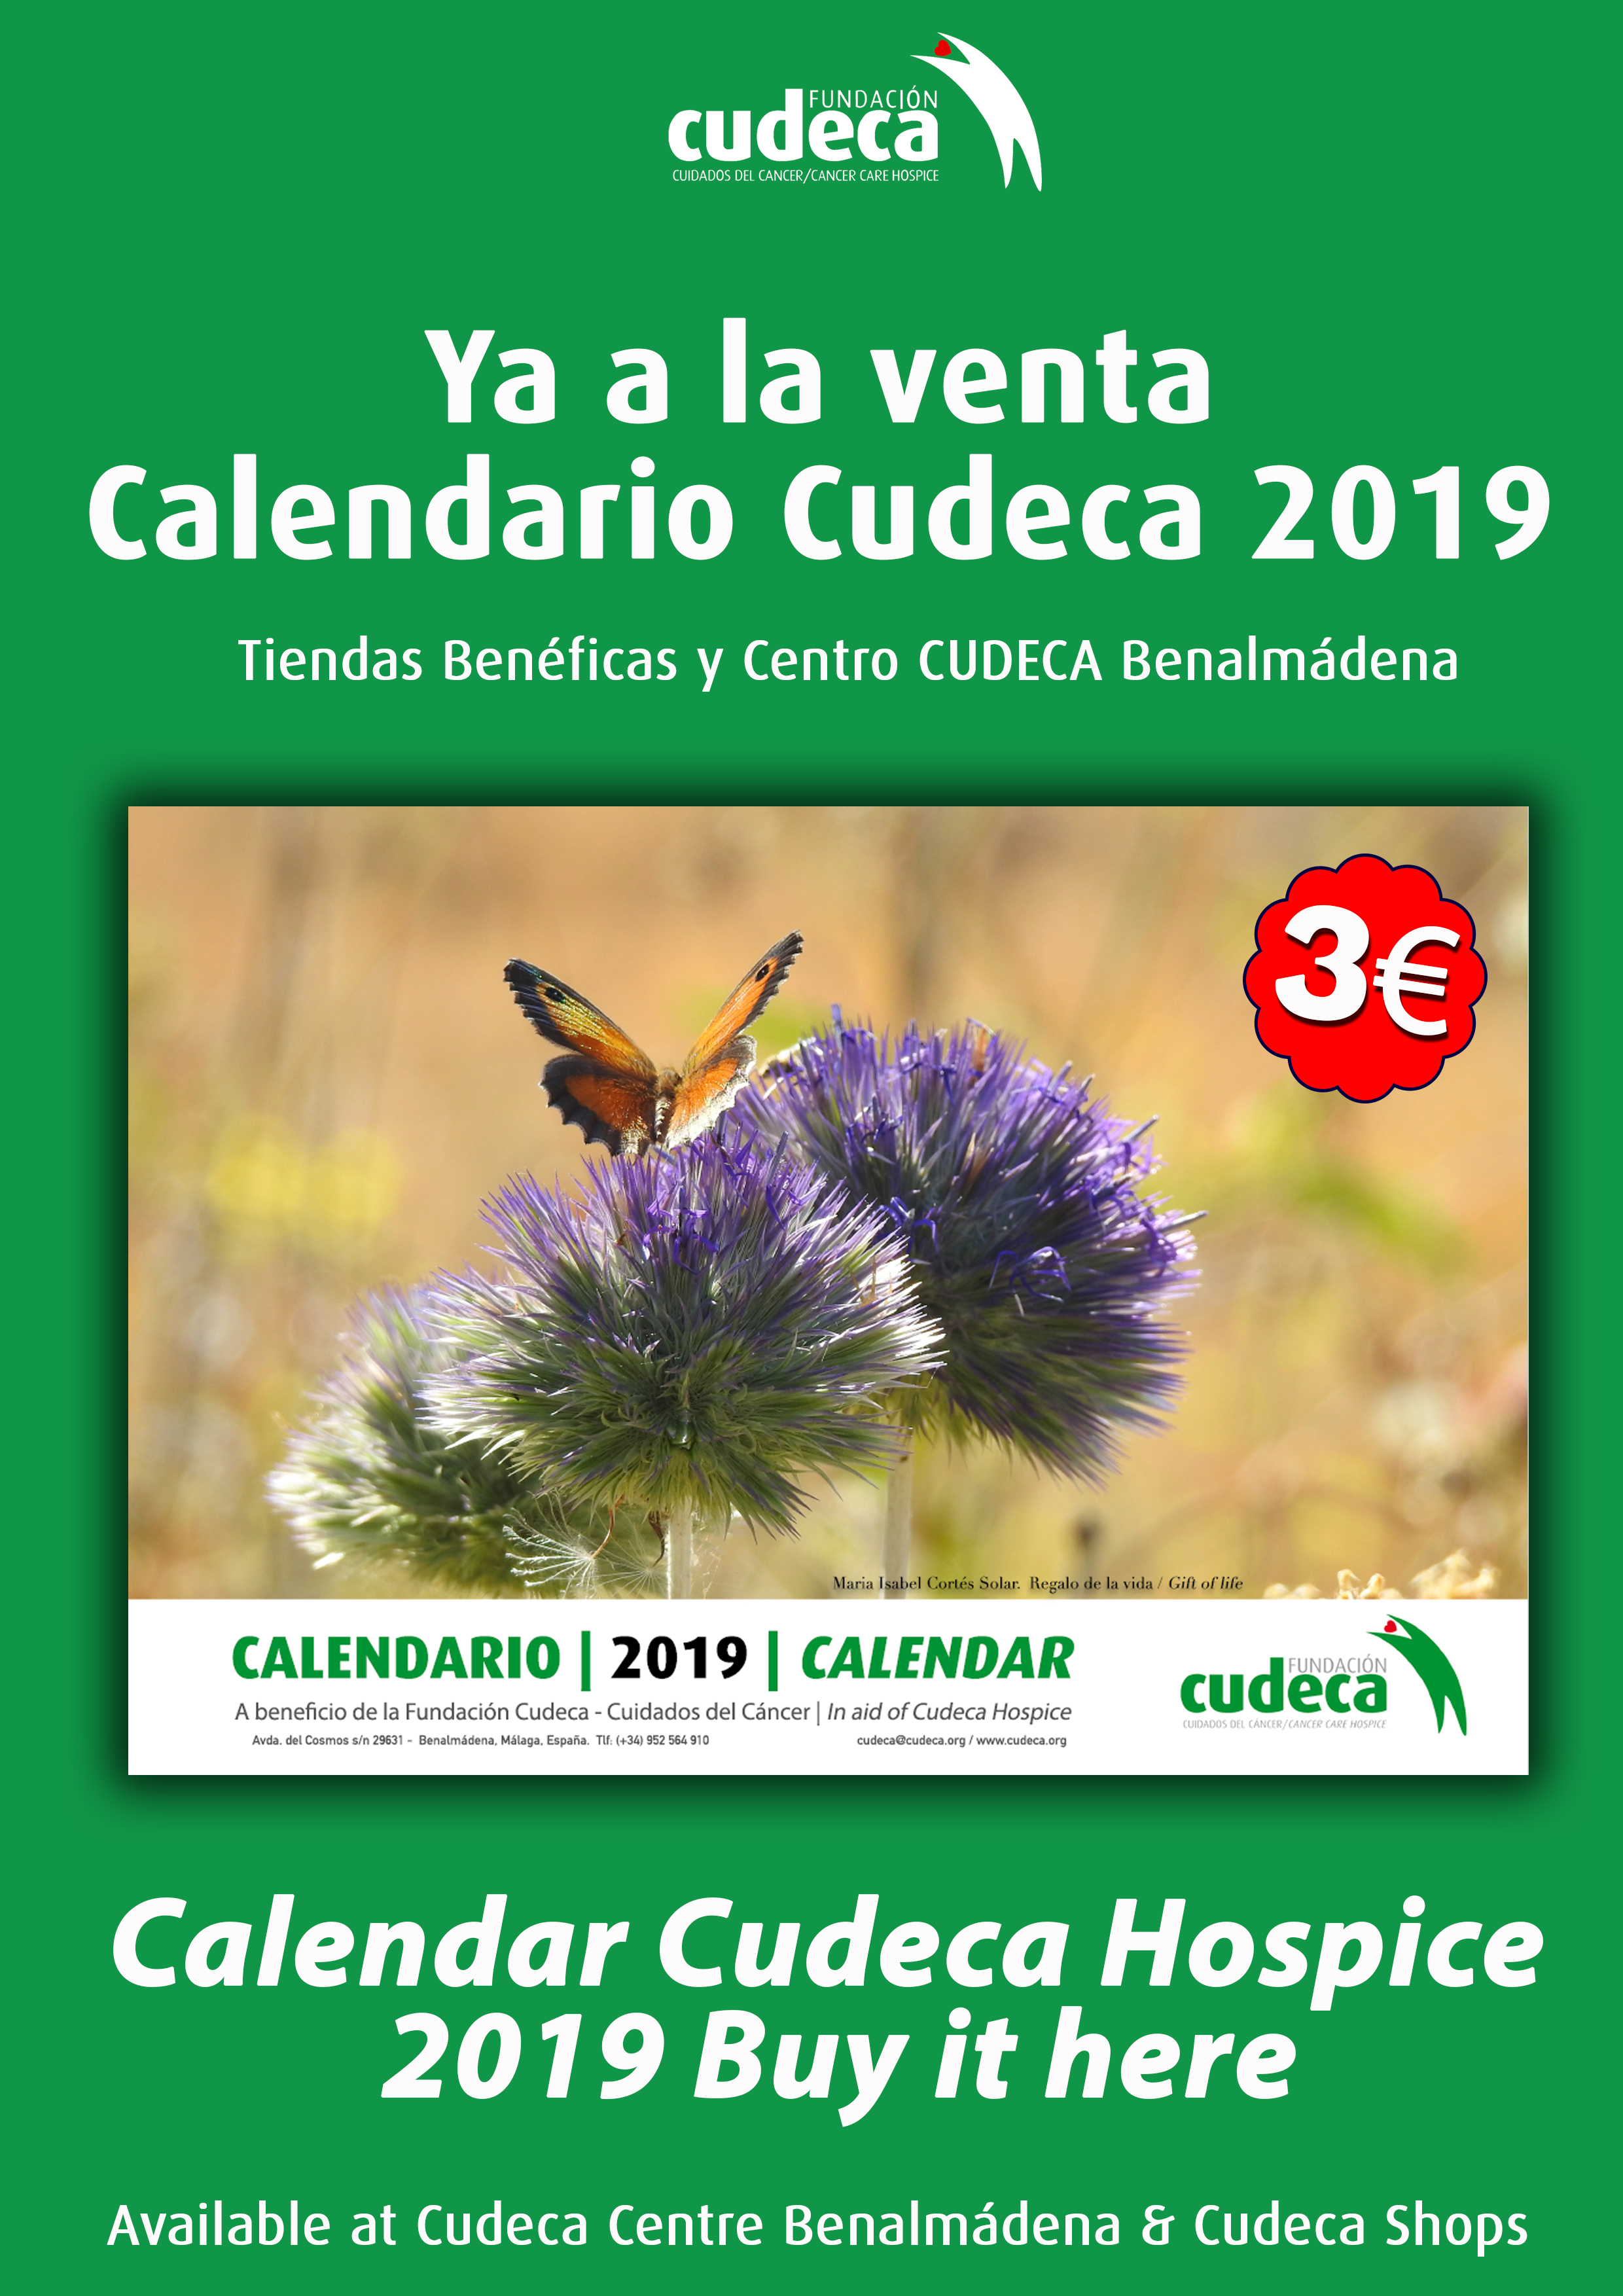 Cudeca Calendar 2019 available now!